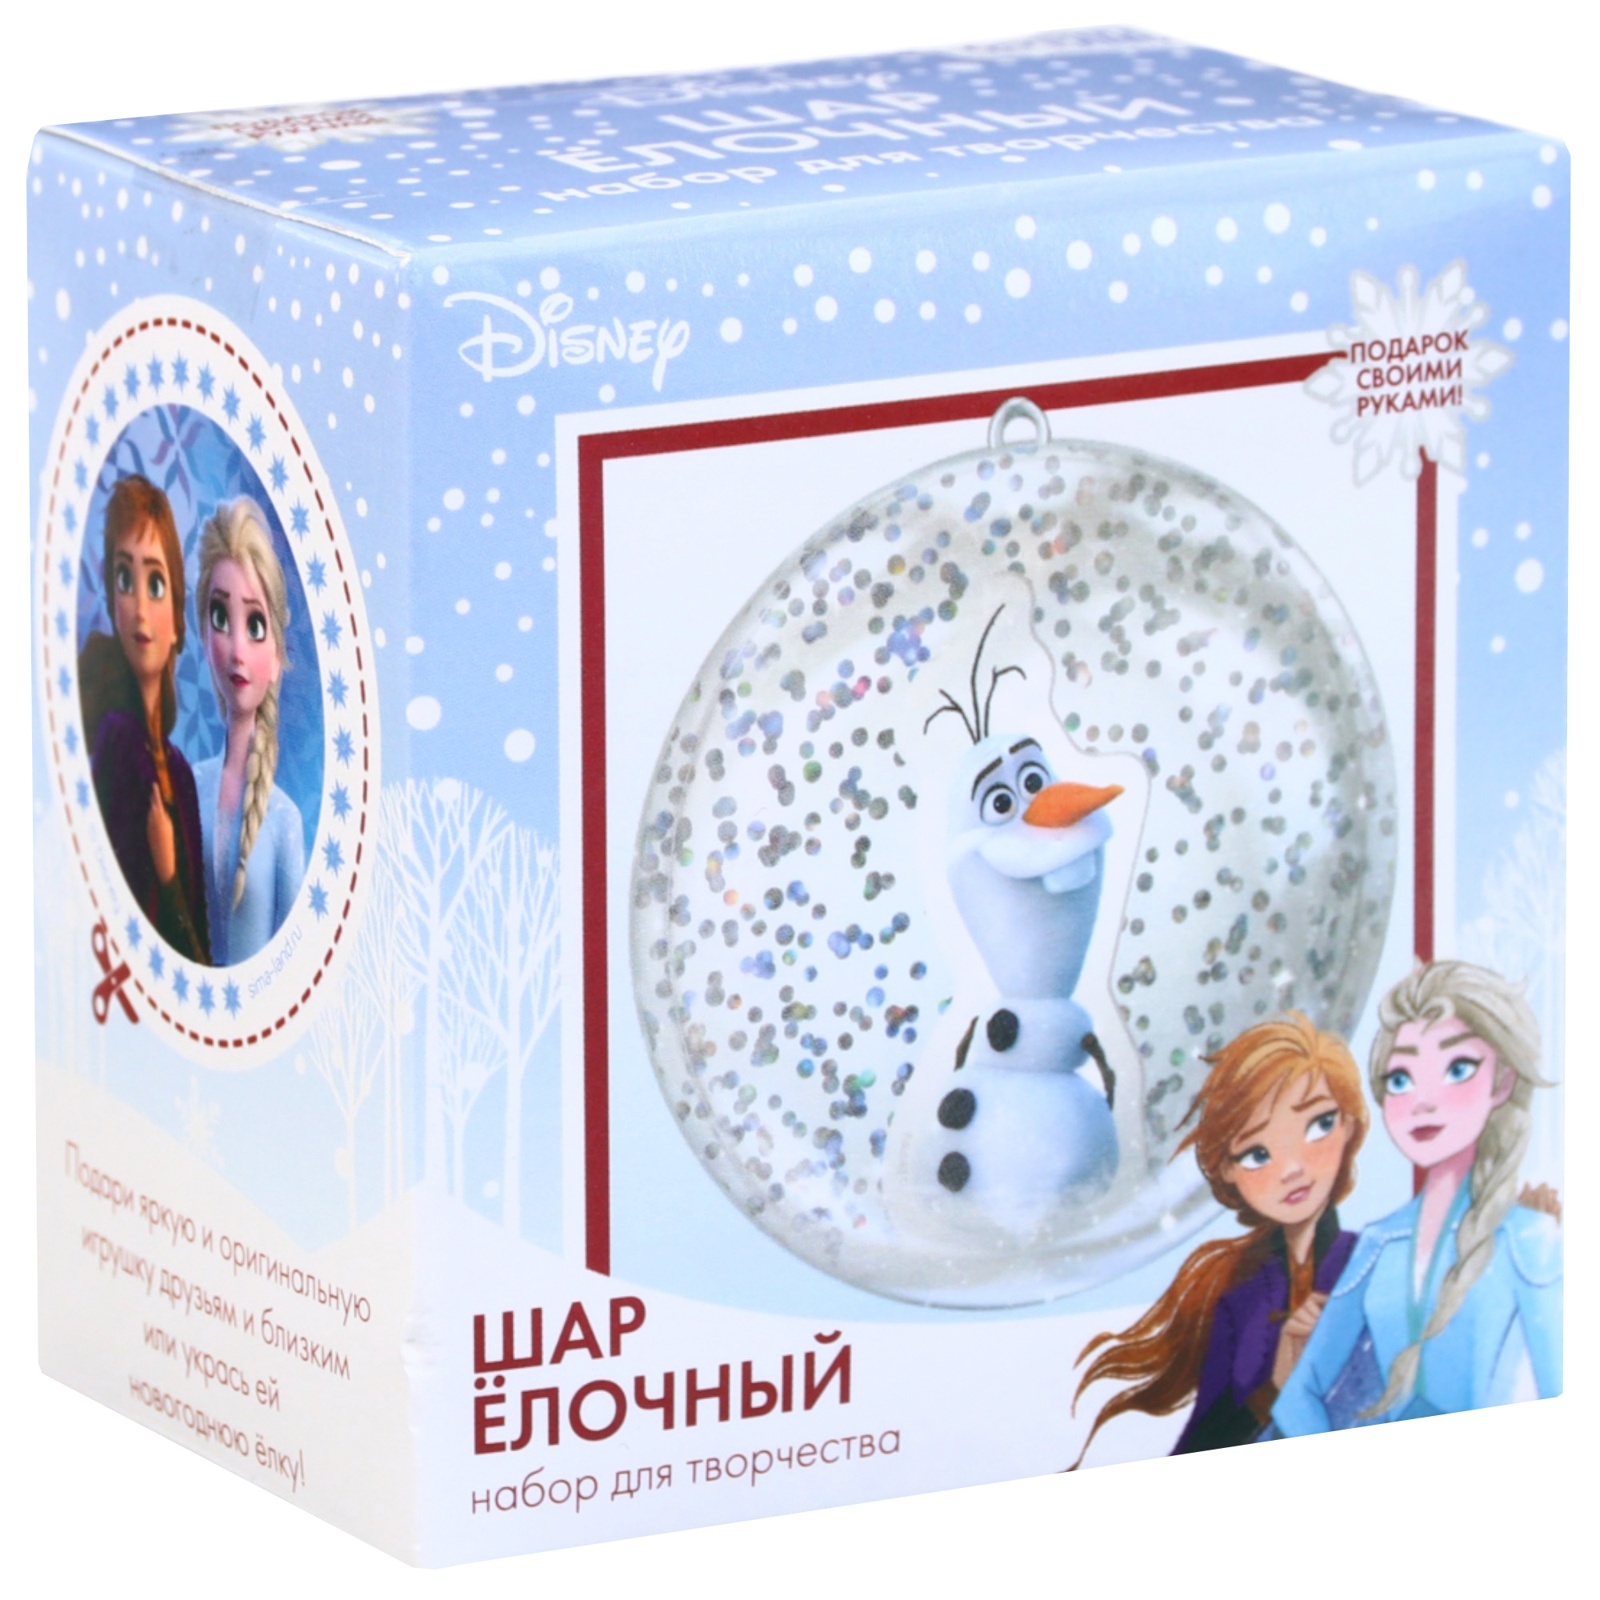 Набор для творчества Елочный шар, Олаф, Холодное сердце (4994543) -  Купить по цене от 63.00 руб.